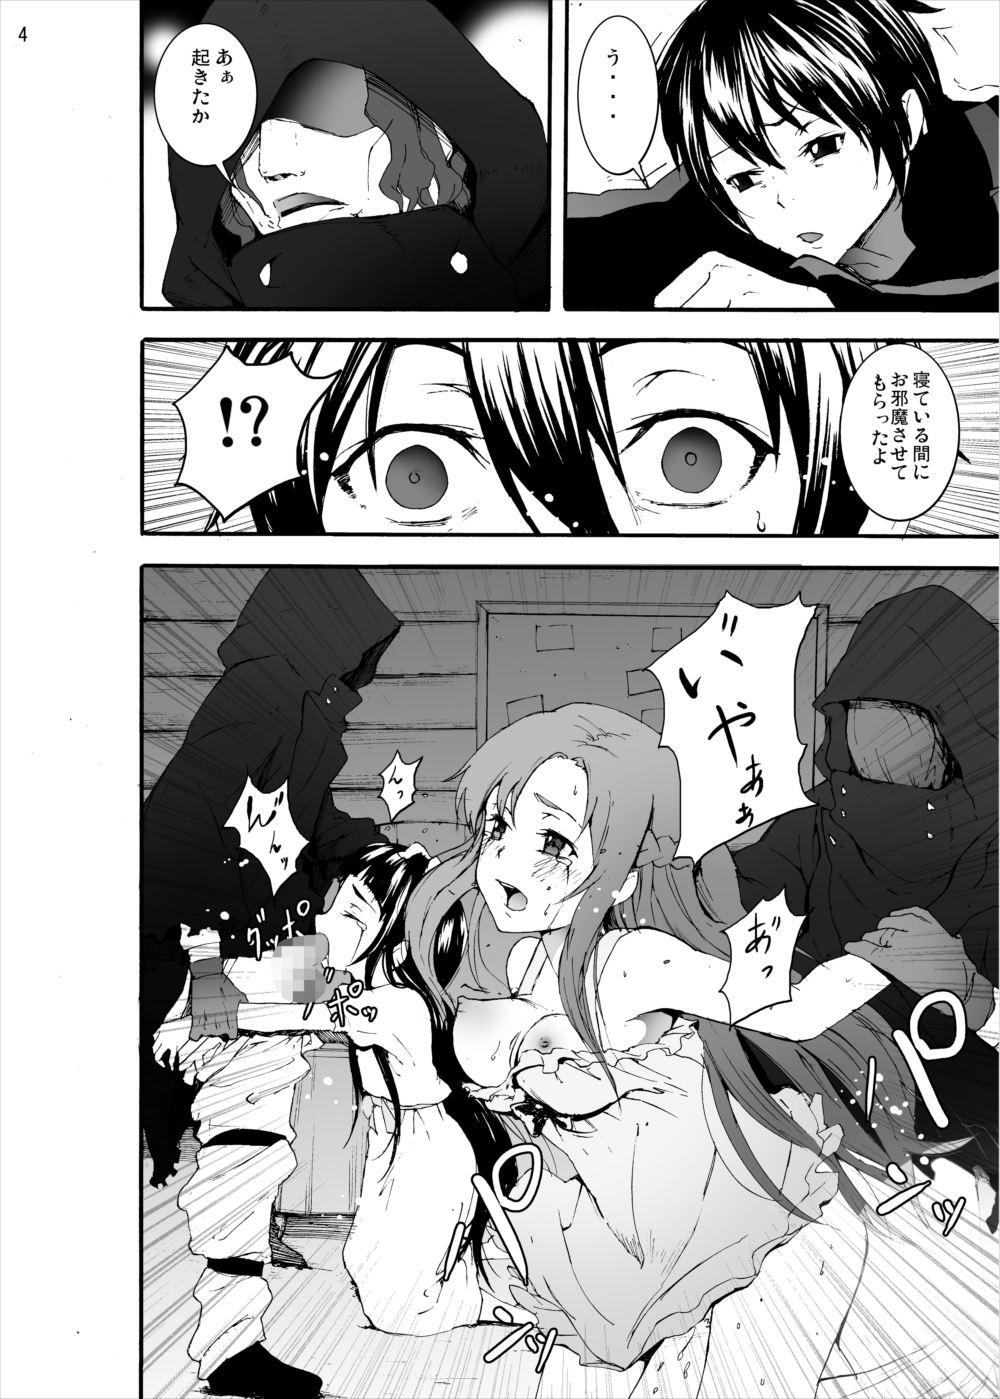  Asuna to Yui no Jigoku Rape... Ryoujoku Oyakodon Story - Sword art online Free Porn Hardcore - Page 3